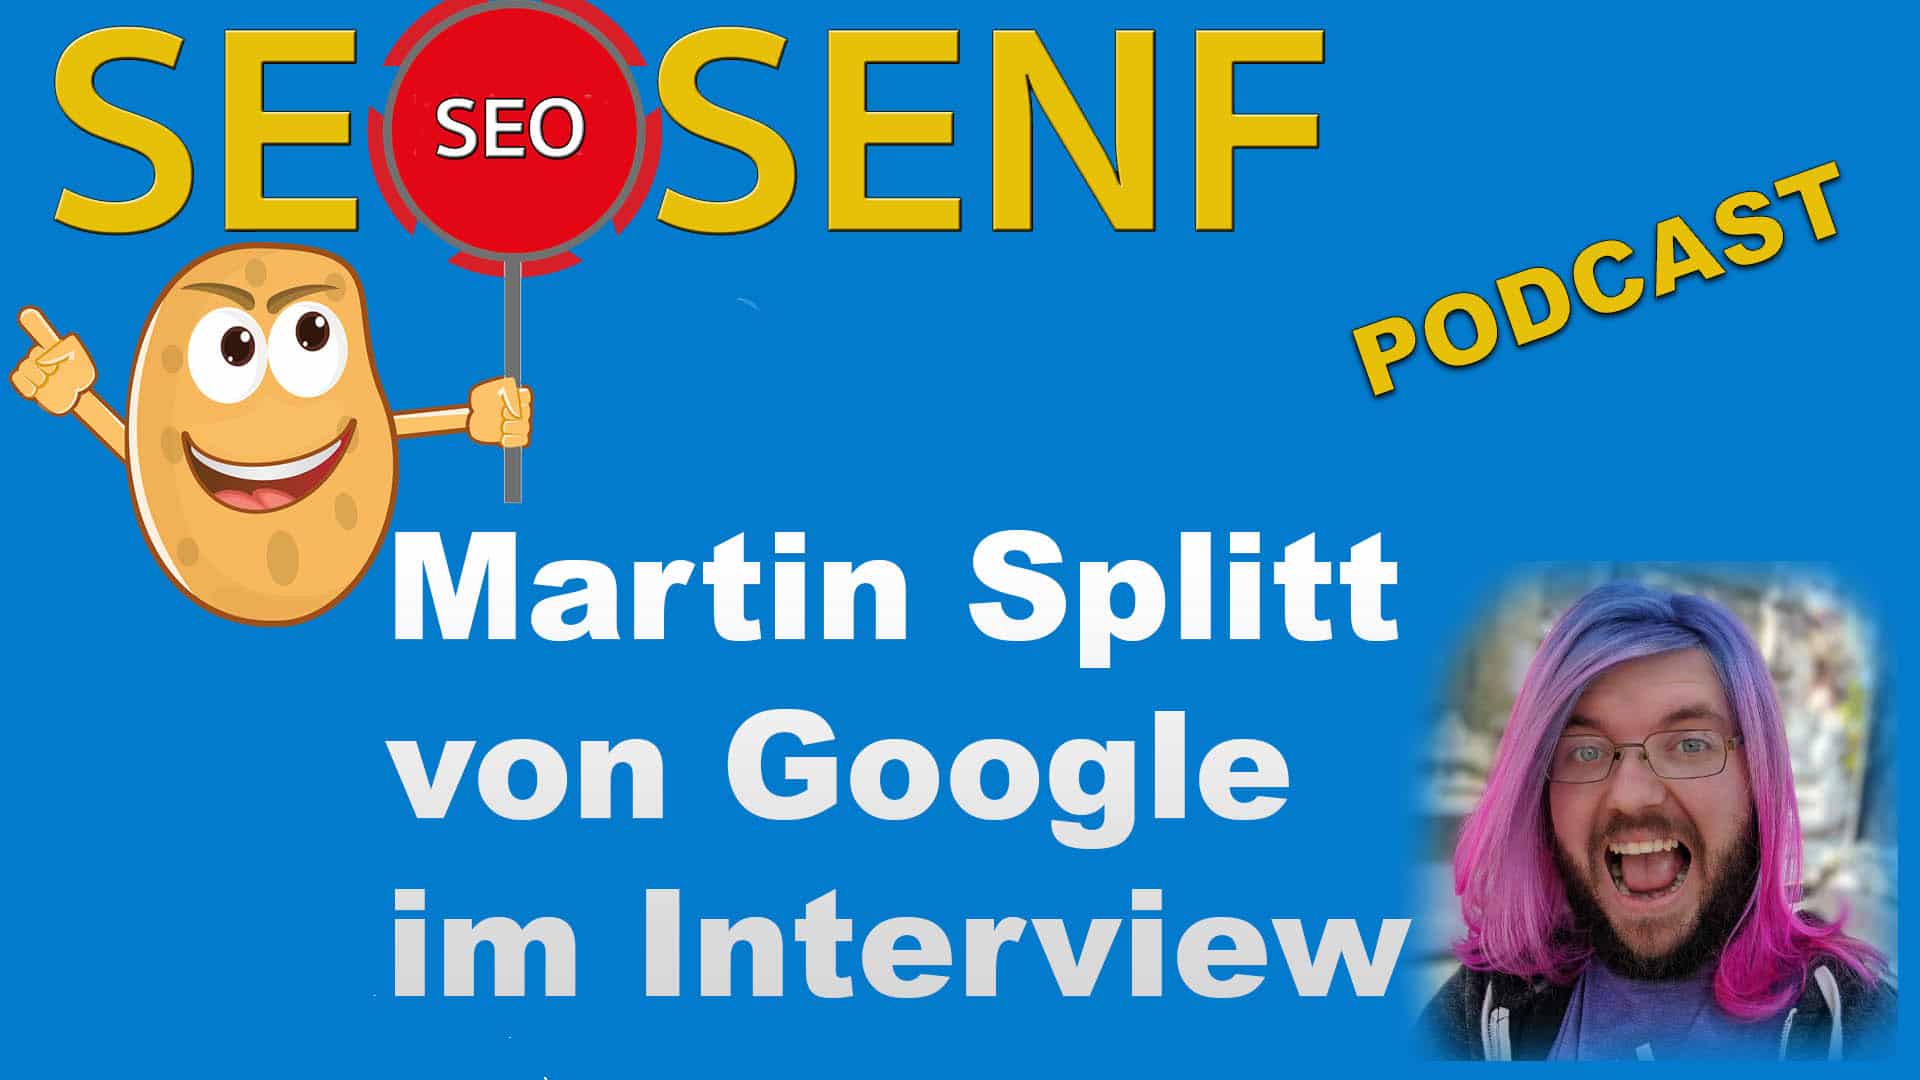 Martin Splitt von Google im Interview #120